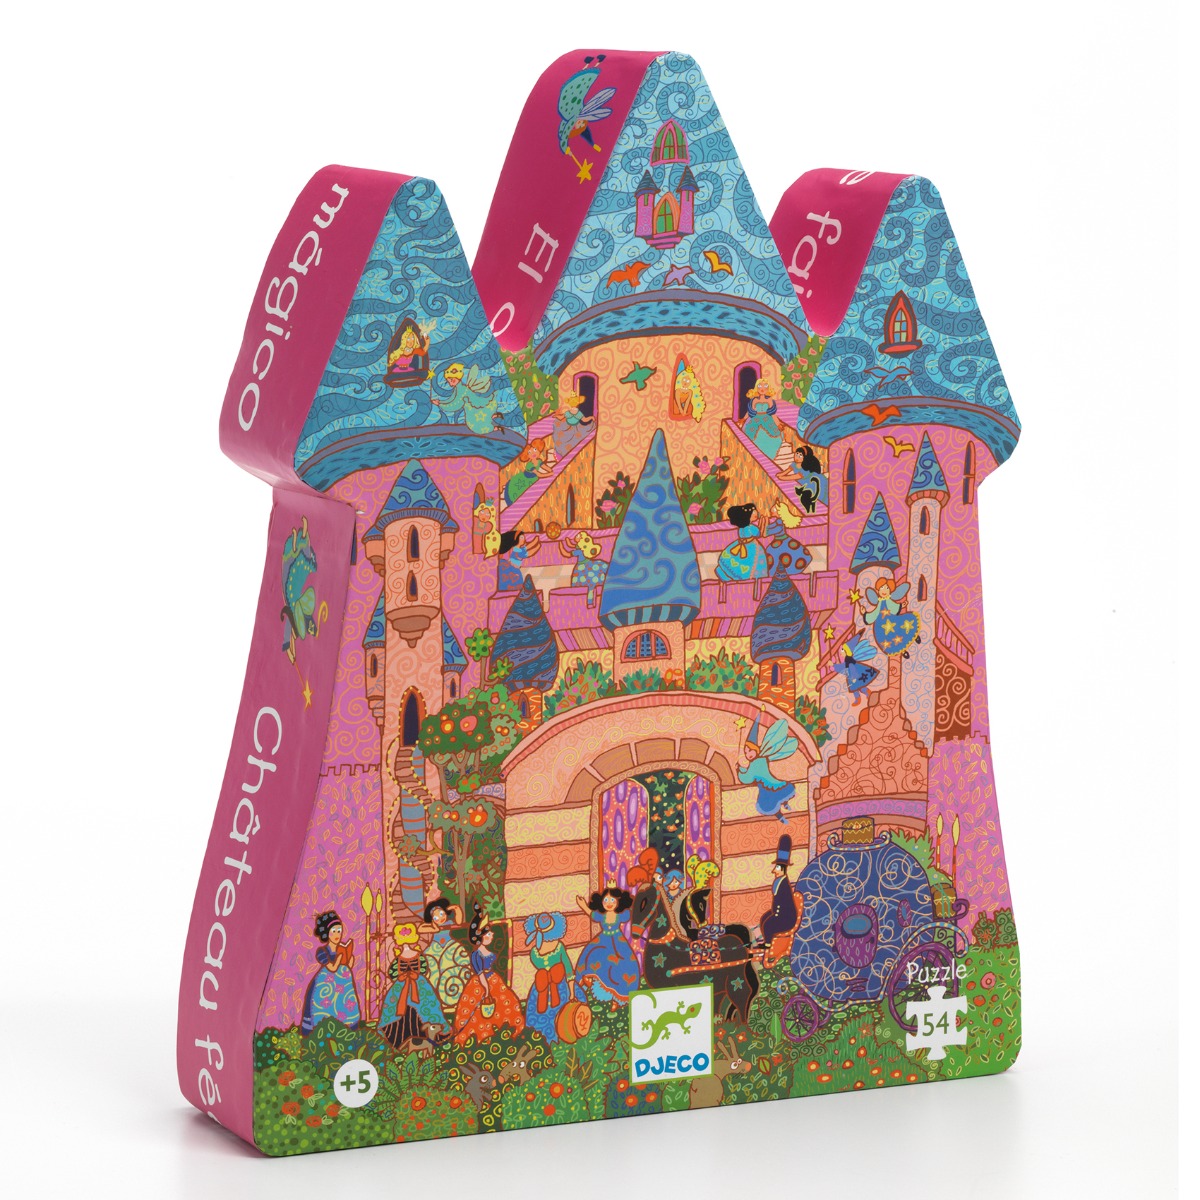 The fairy castle 54 piece puzzle (Age +5)